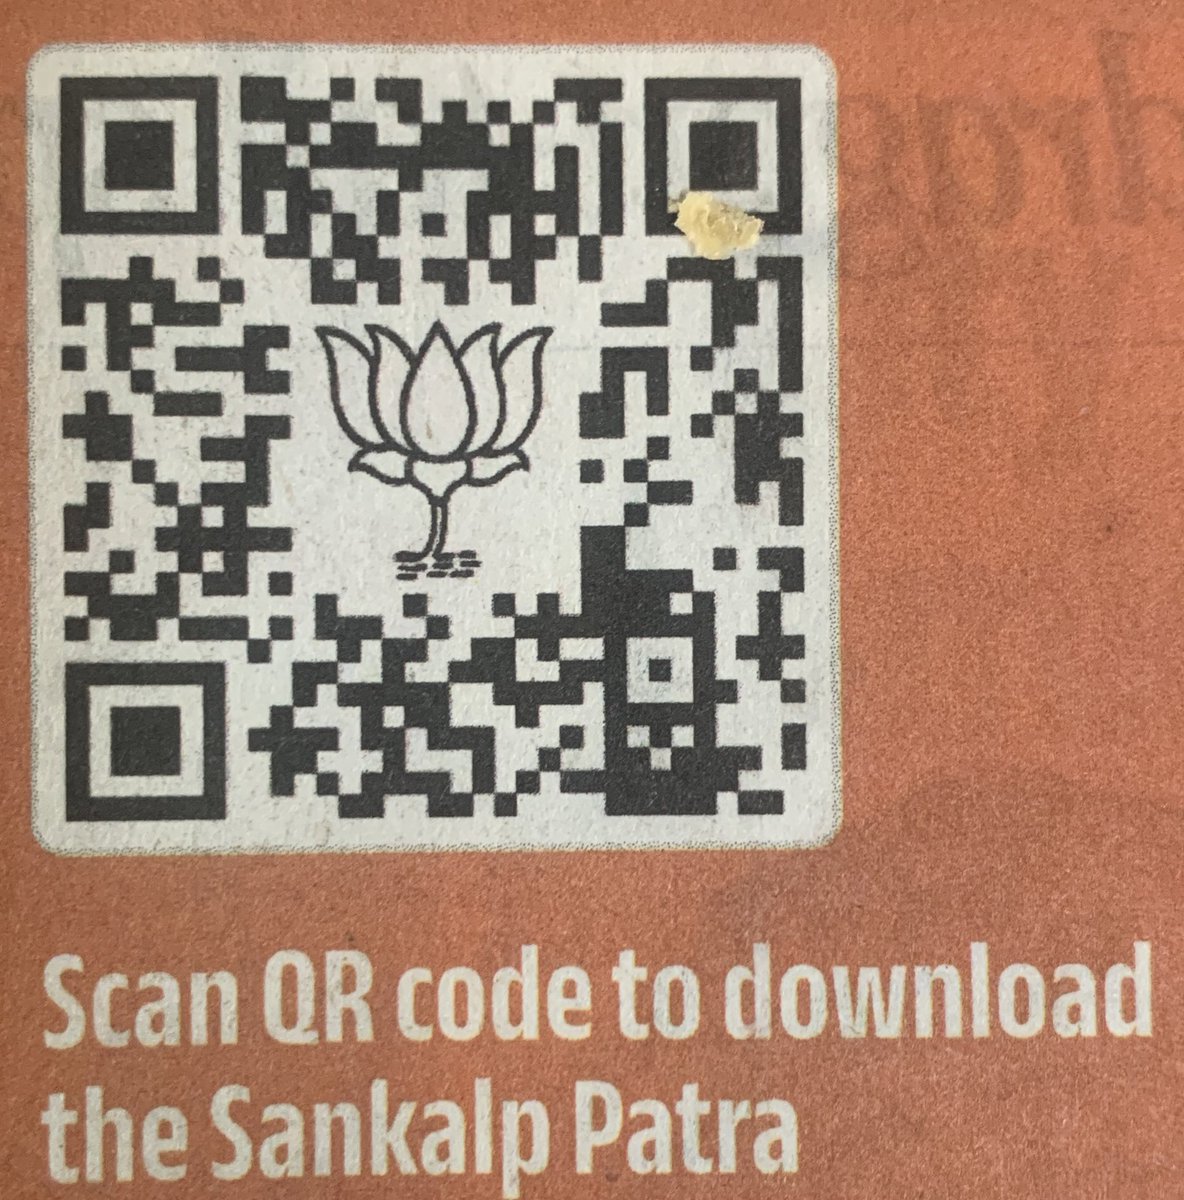 Dear all, kindly #scan #QR code to #download #SankalpPatra which is #ModiKiGaurantee #manifesto2024 

#AbkiBaar400Baar #AbkiBaar400Paar